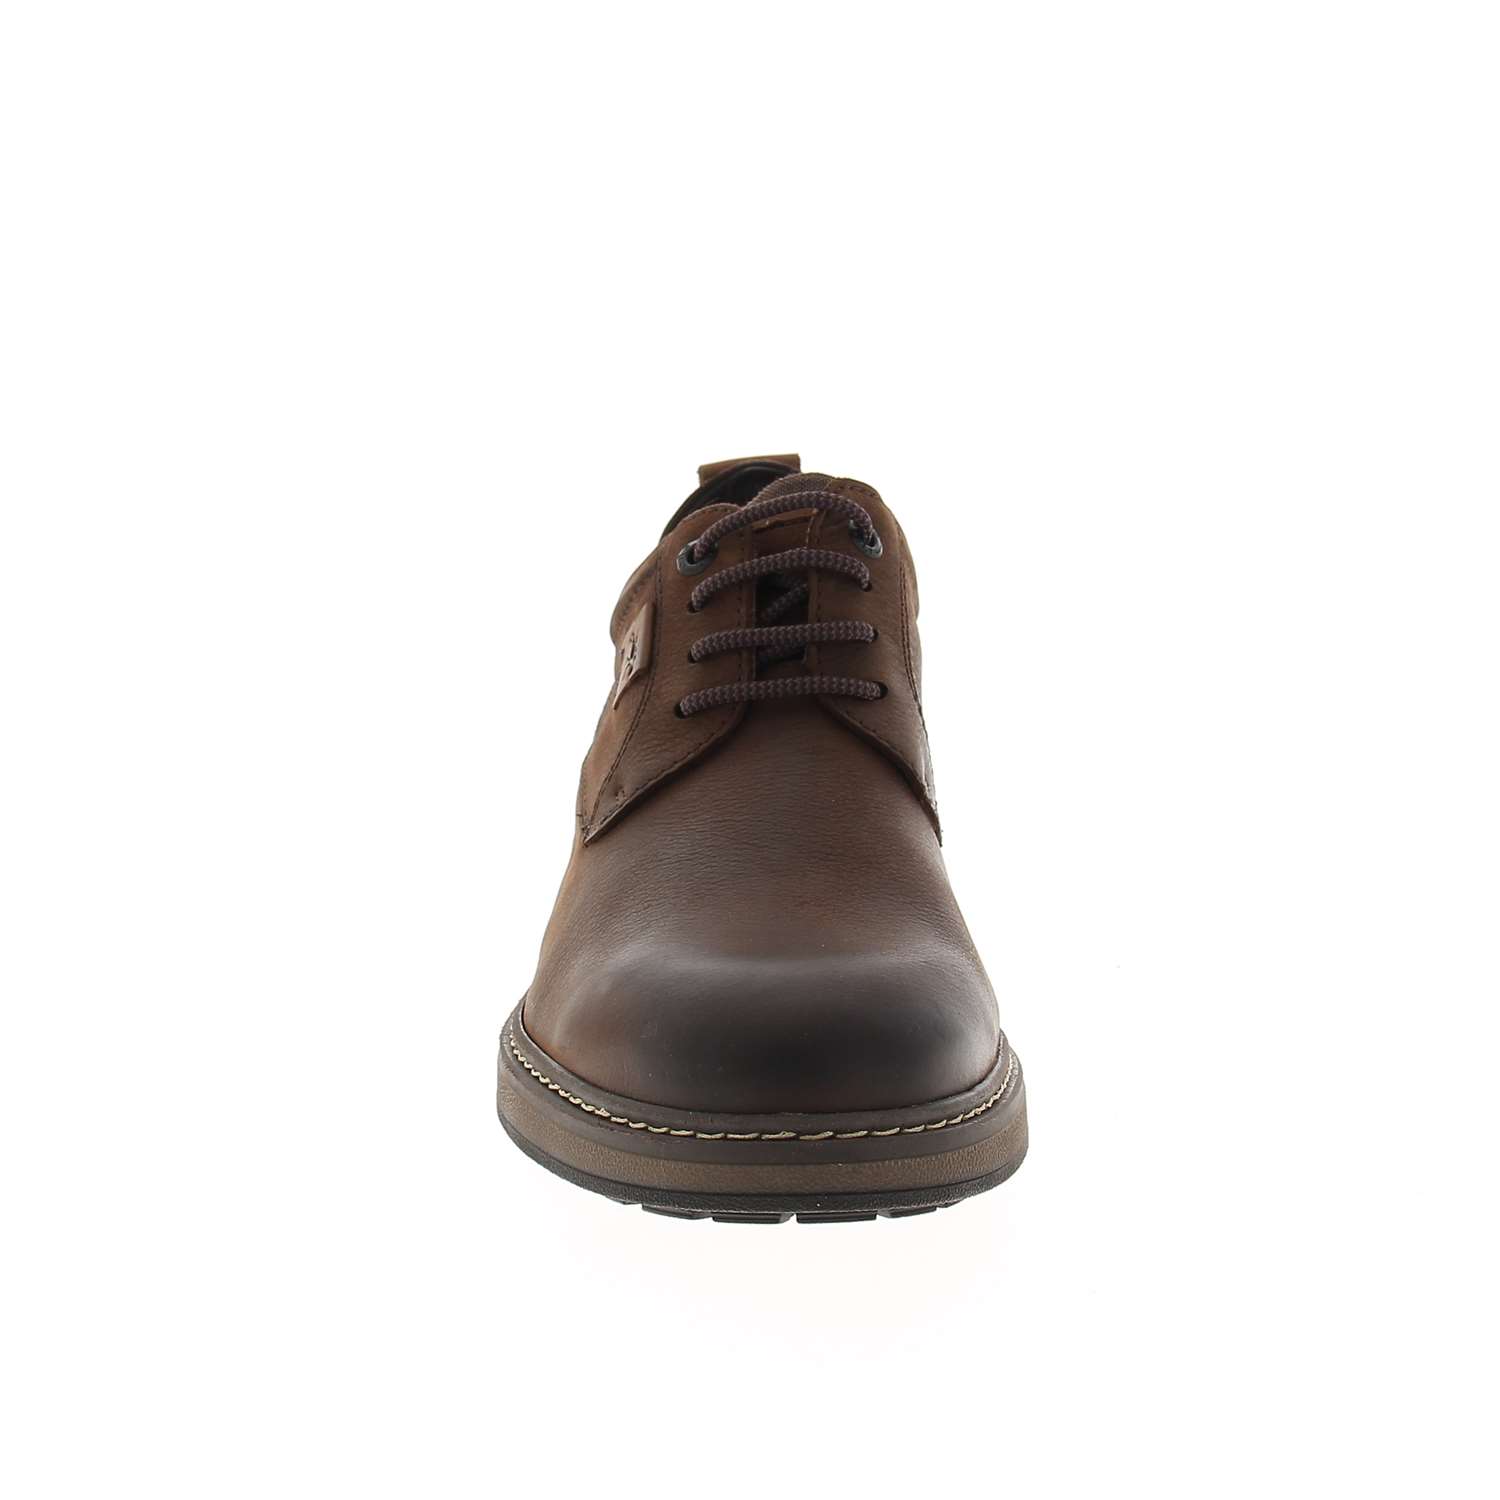 03 - FLUSPORT - FLUCHOS - Chaussures à lacets - Nubuck